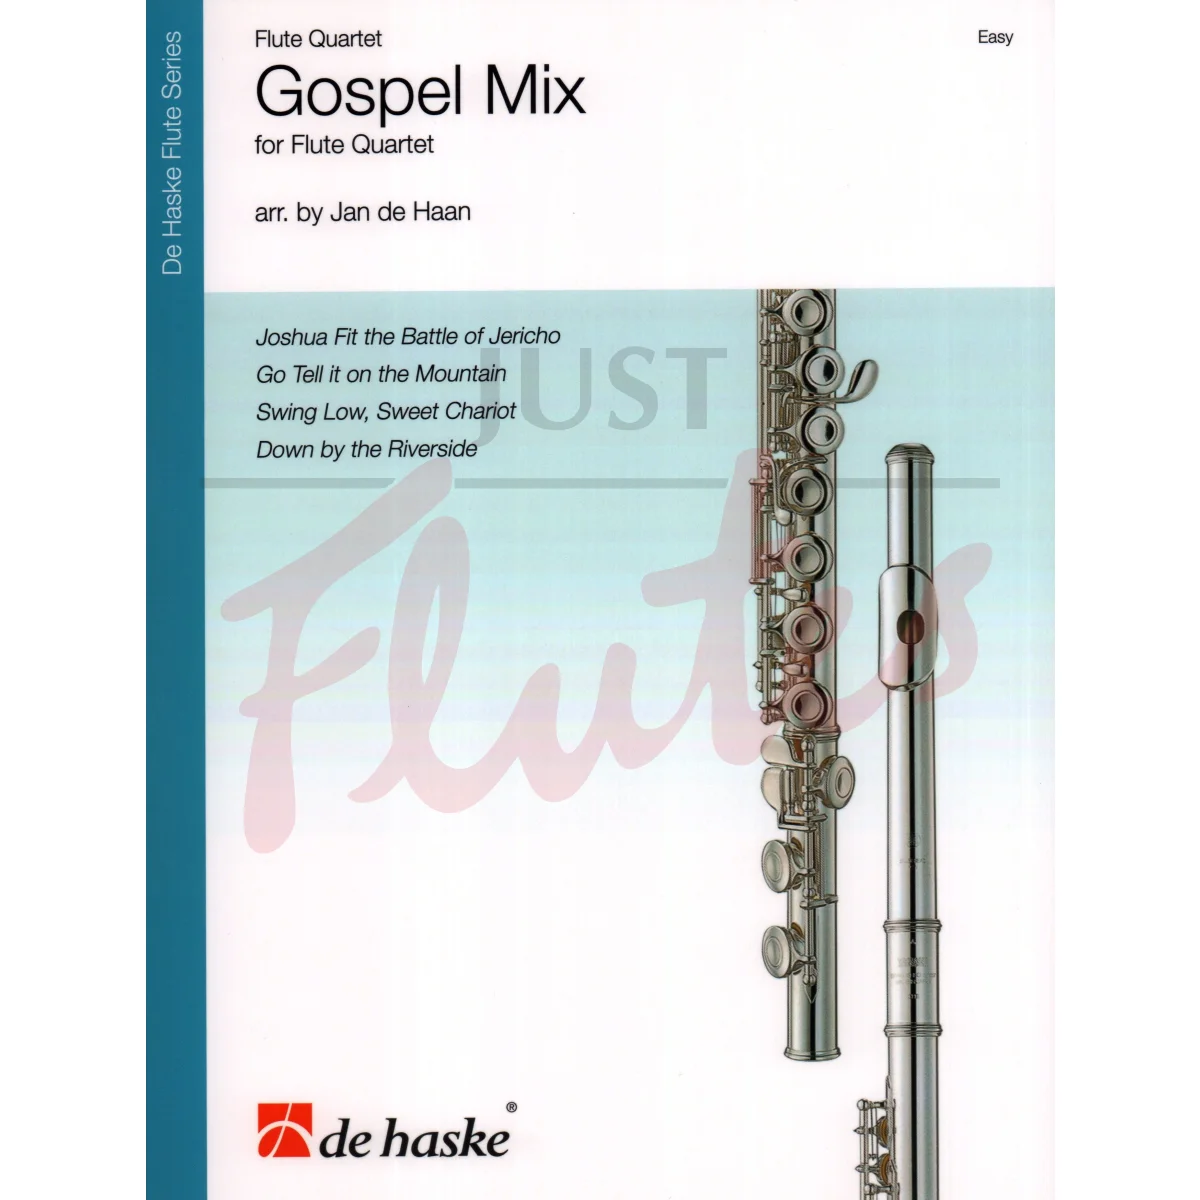 Gospel Mix for Flute Quartet